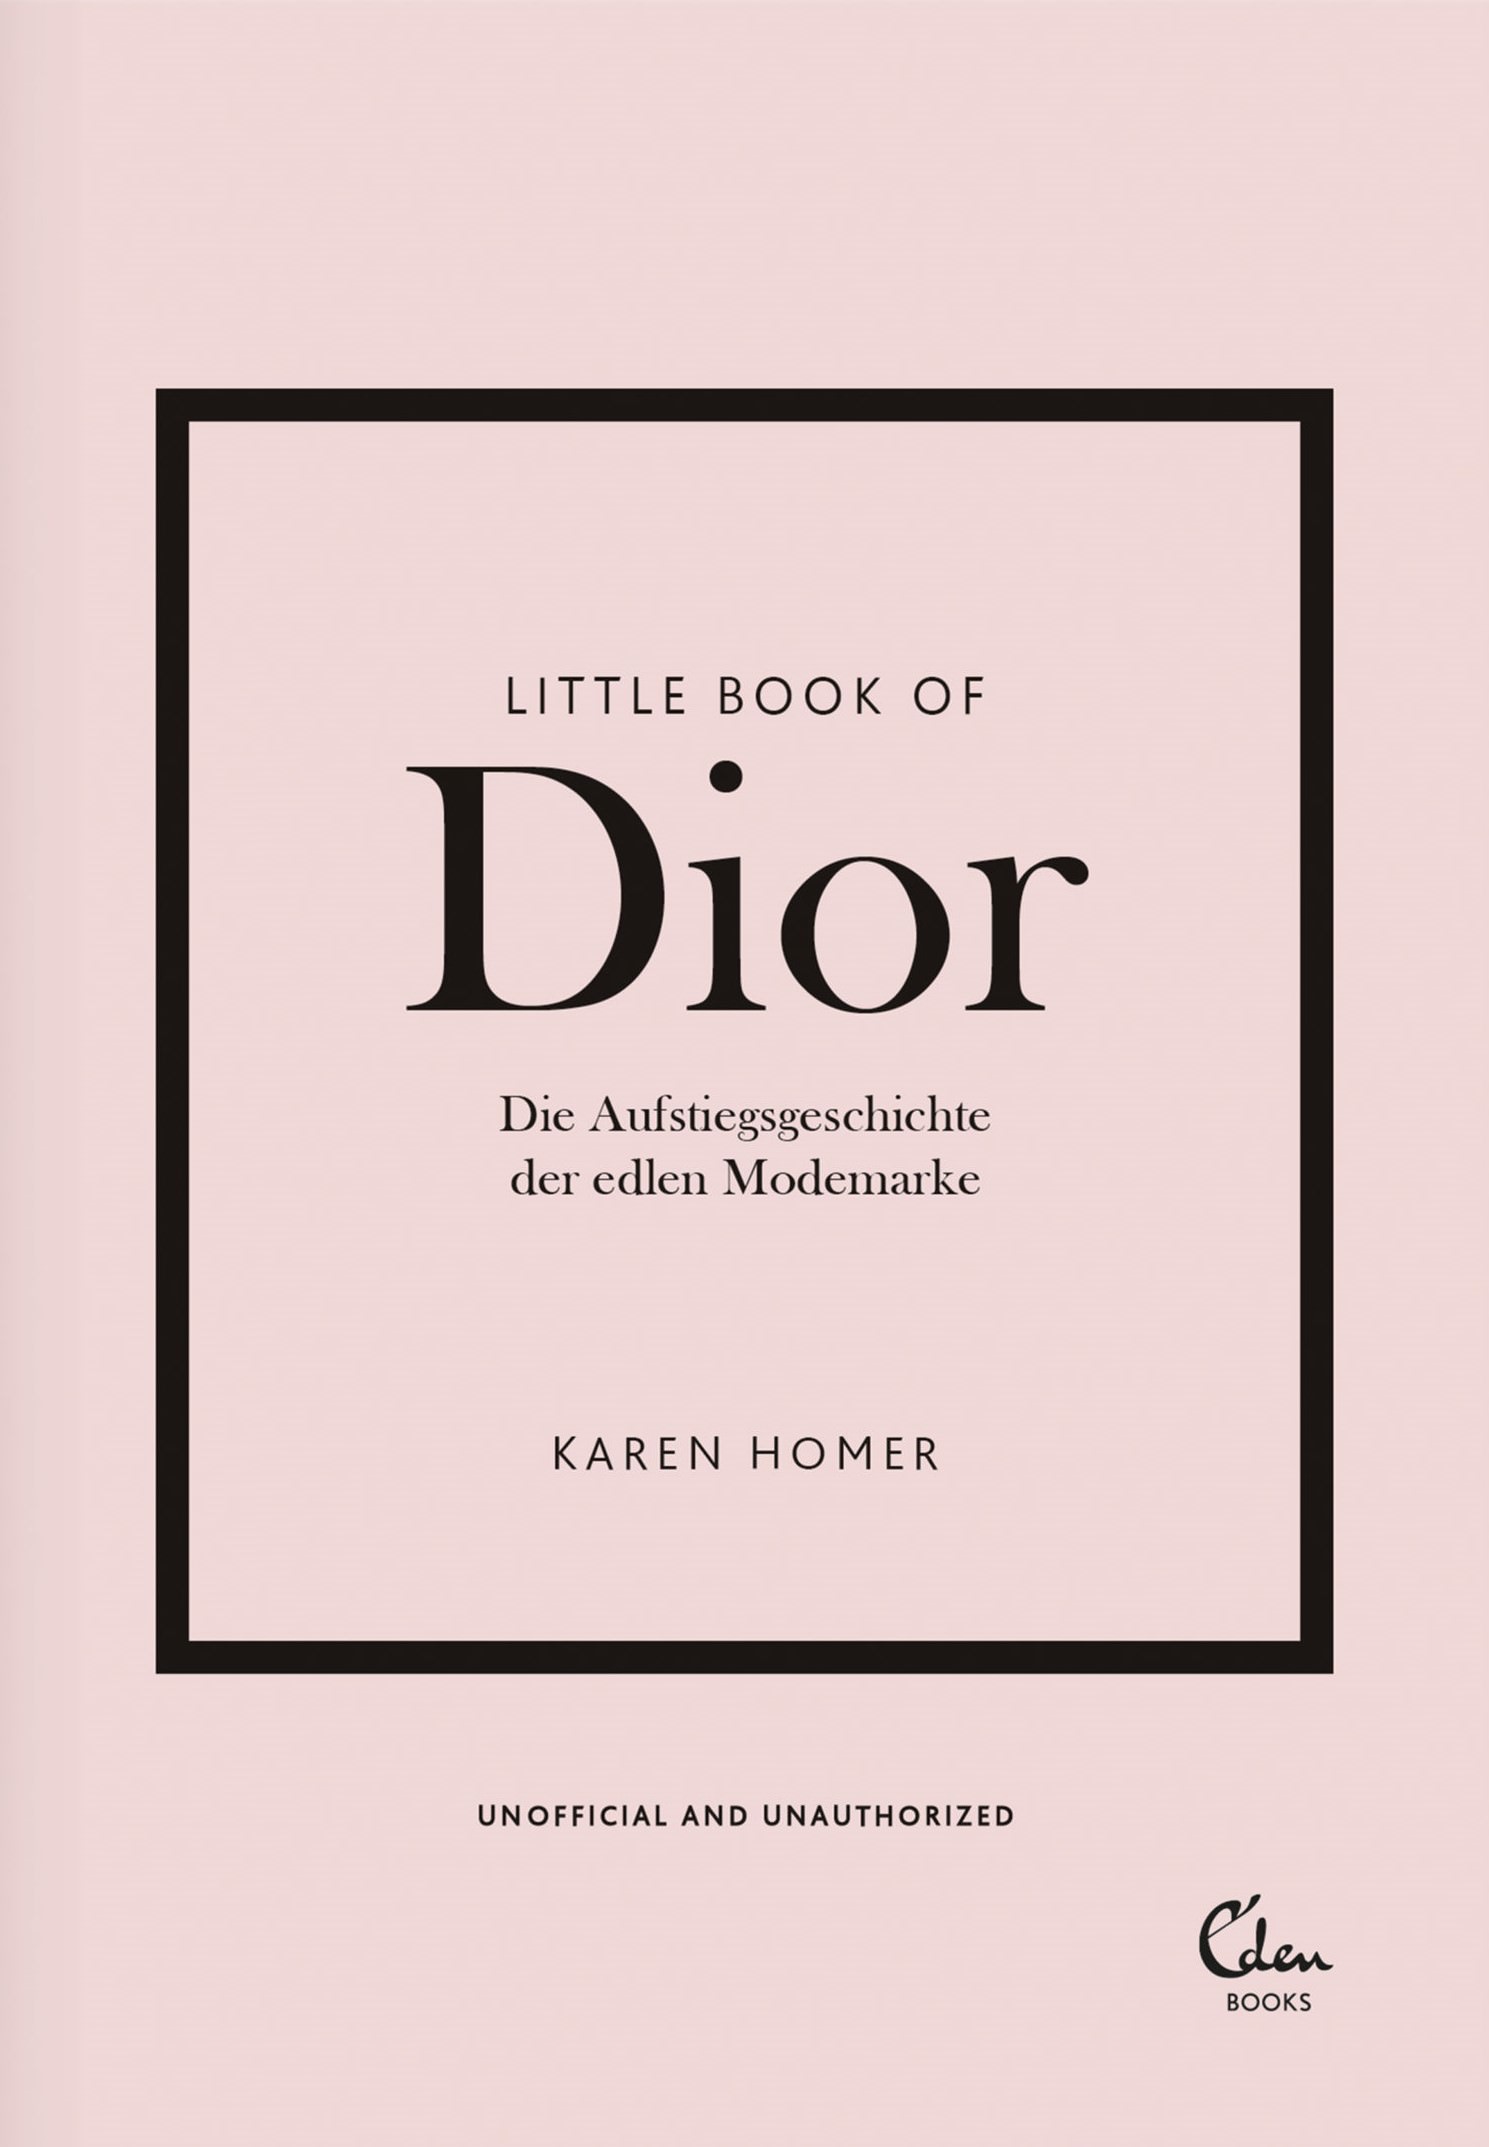 Buchcover: Karen Homer: Little Book of Dior